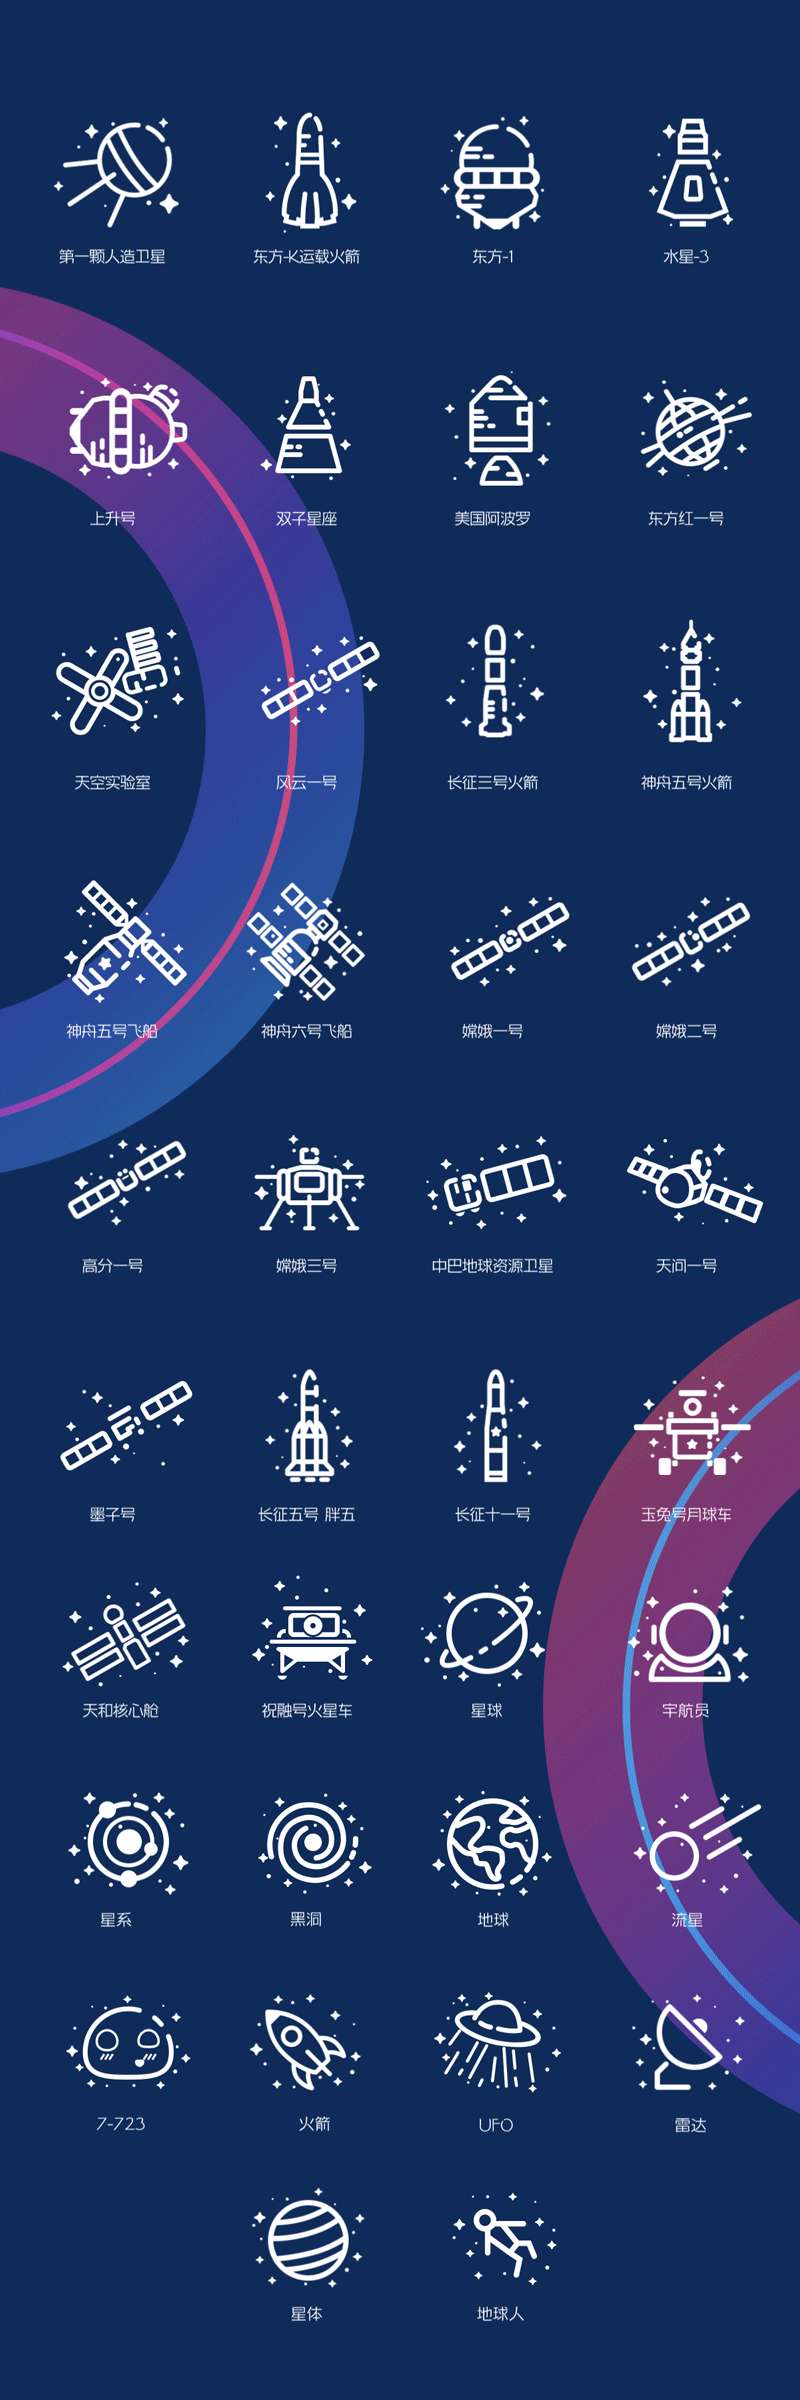 锐字宇航局发布38个宇宙航天图标&字体，免费商用！神州出征，汉字铸梦！ 图标素材 第2张